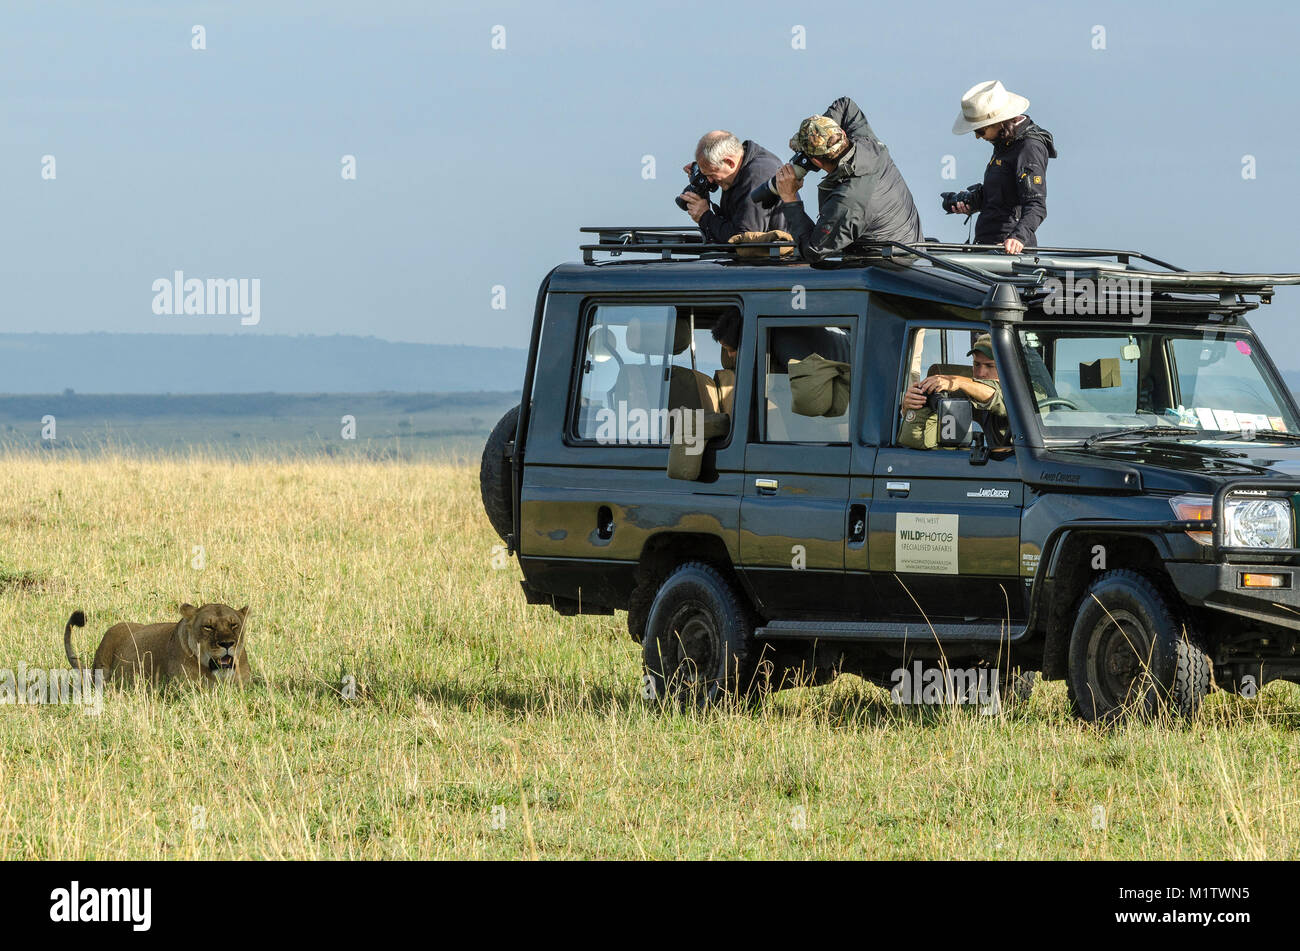 Los turistas de safari, aprovechar la cercanía de una leona descansando en la sombra de su vehículo de safari para obtener algunas fotos de cerca. Foto de stock